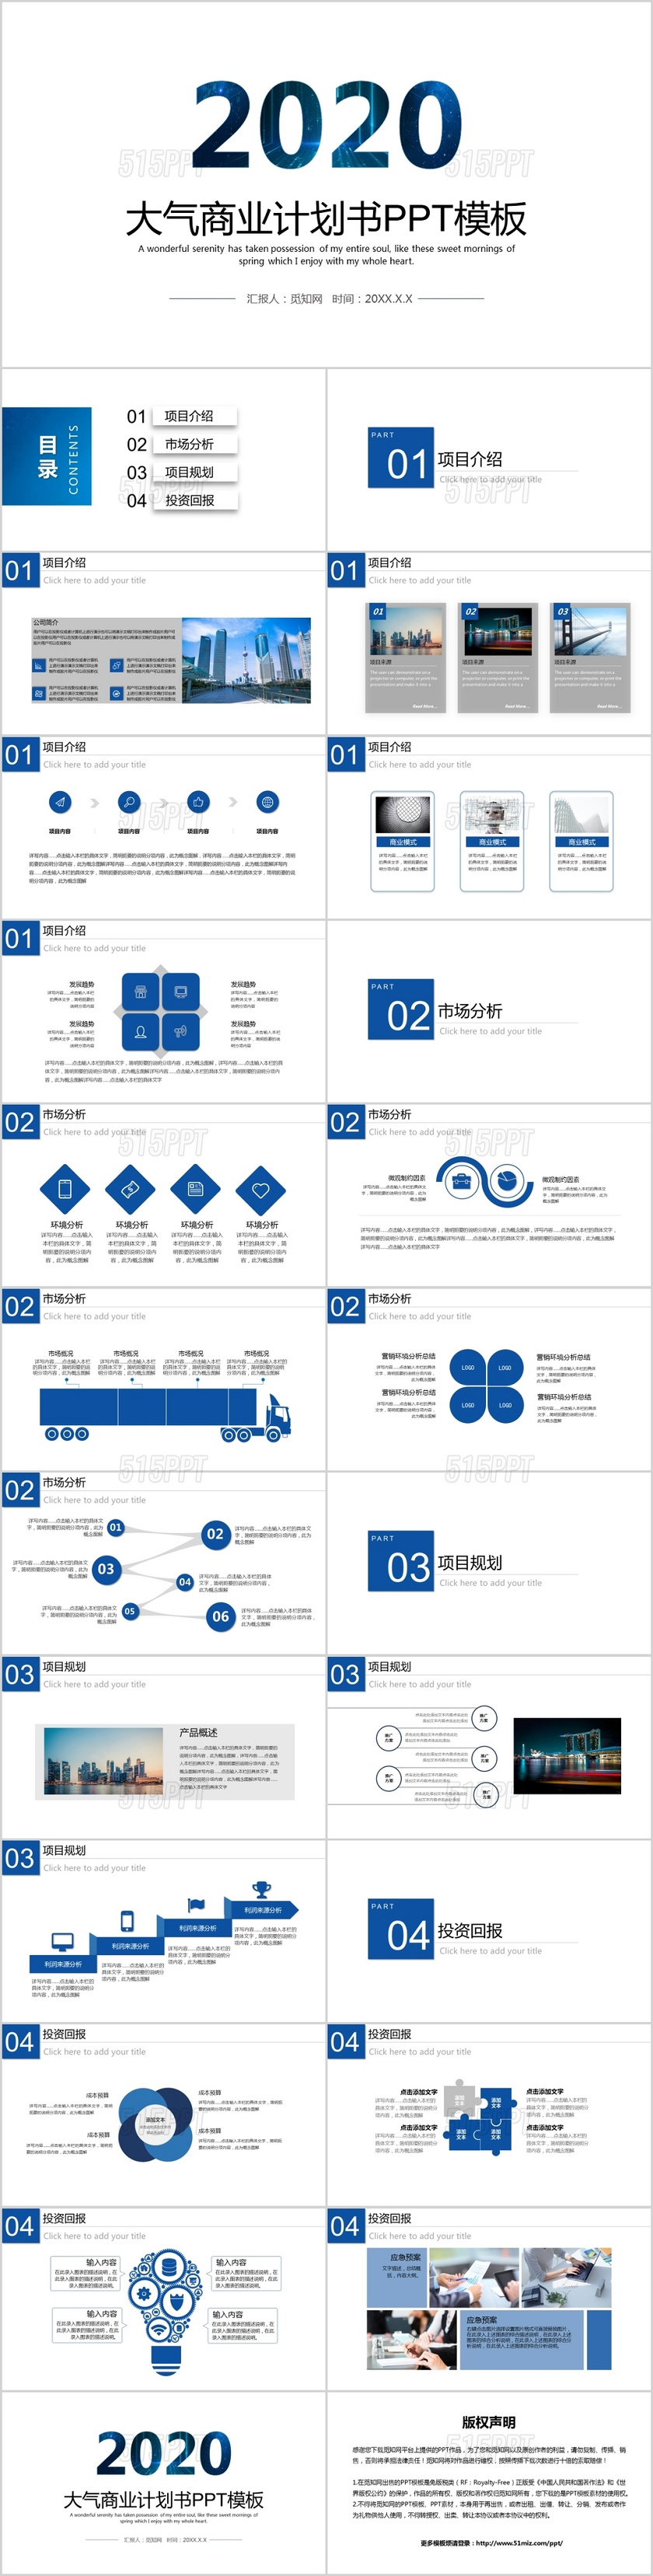 2020大气蓝色商务商业计划书PPT模板